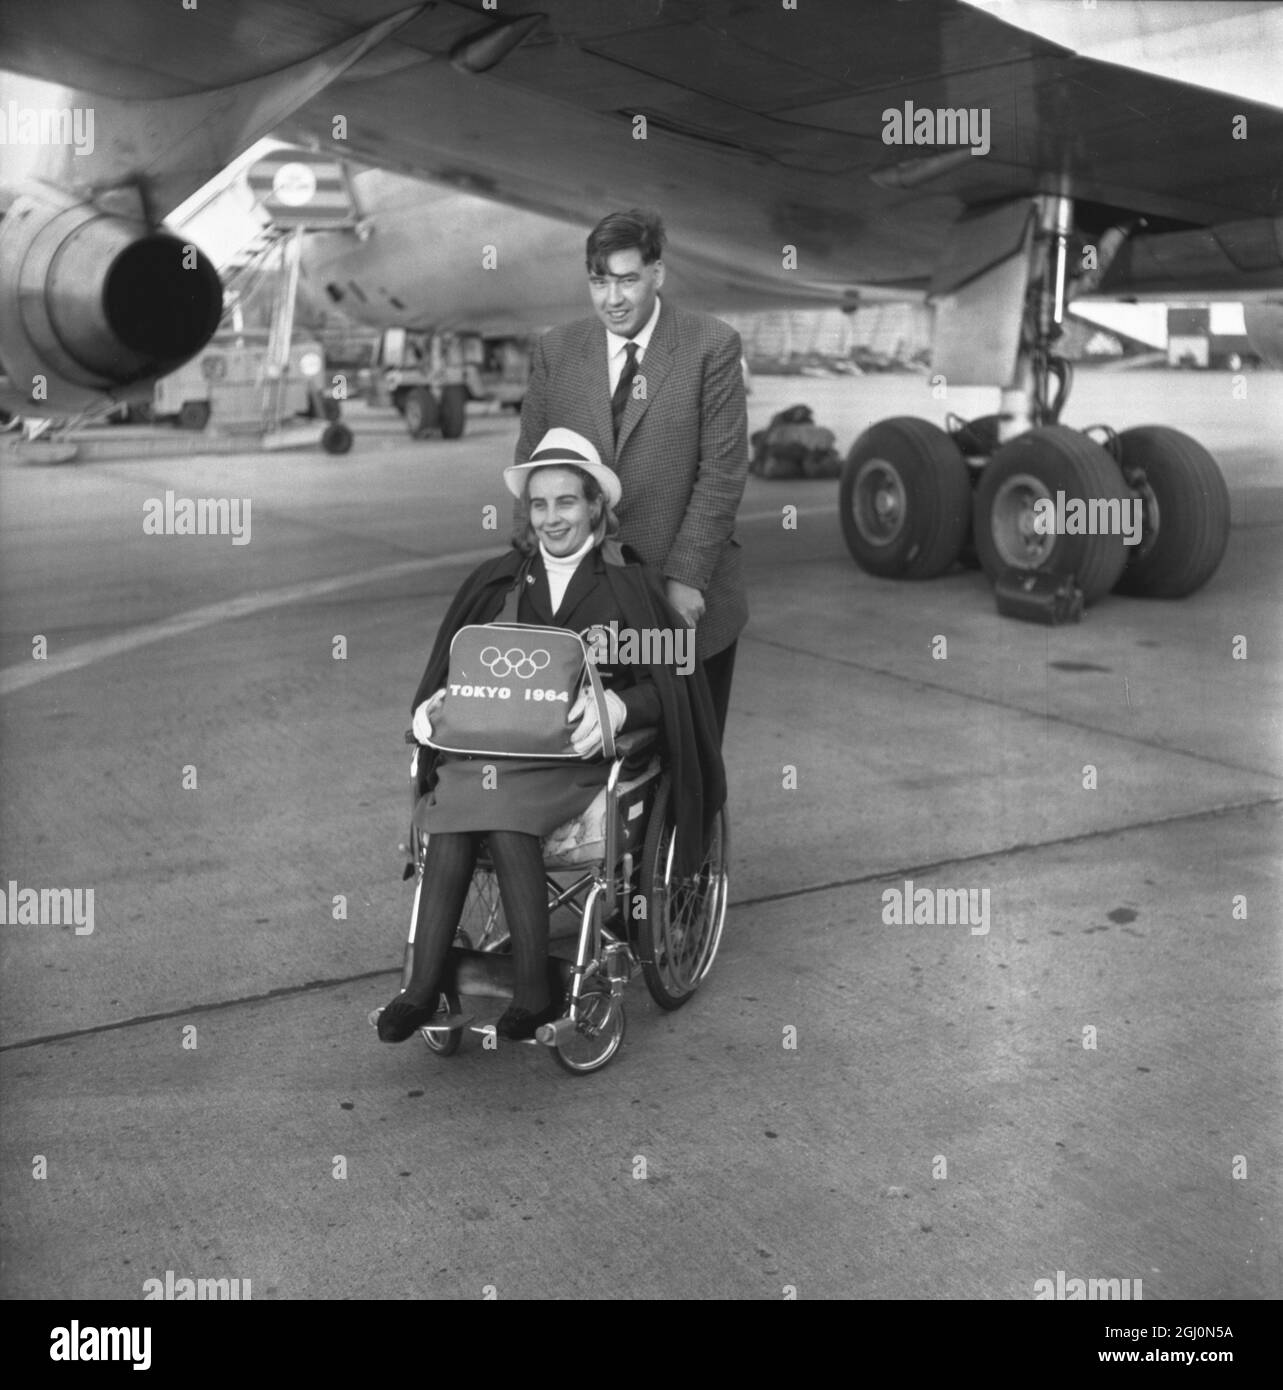 Lord David Masham schiebt den Rollstuhl seiner Frau Lady Susan Masham am Londoner Flughafen in Richtung ihres Flugzeugs. Sie tritt im Rahmen des britischen Teams an den Schwimm- und Tischtennisveranstaltungen der Paraplegiker-Olympiade in Tokio, Japan, an. 4. November 1964 Stockfoto